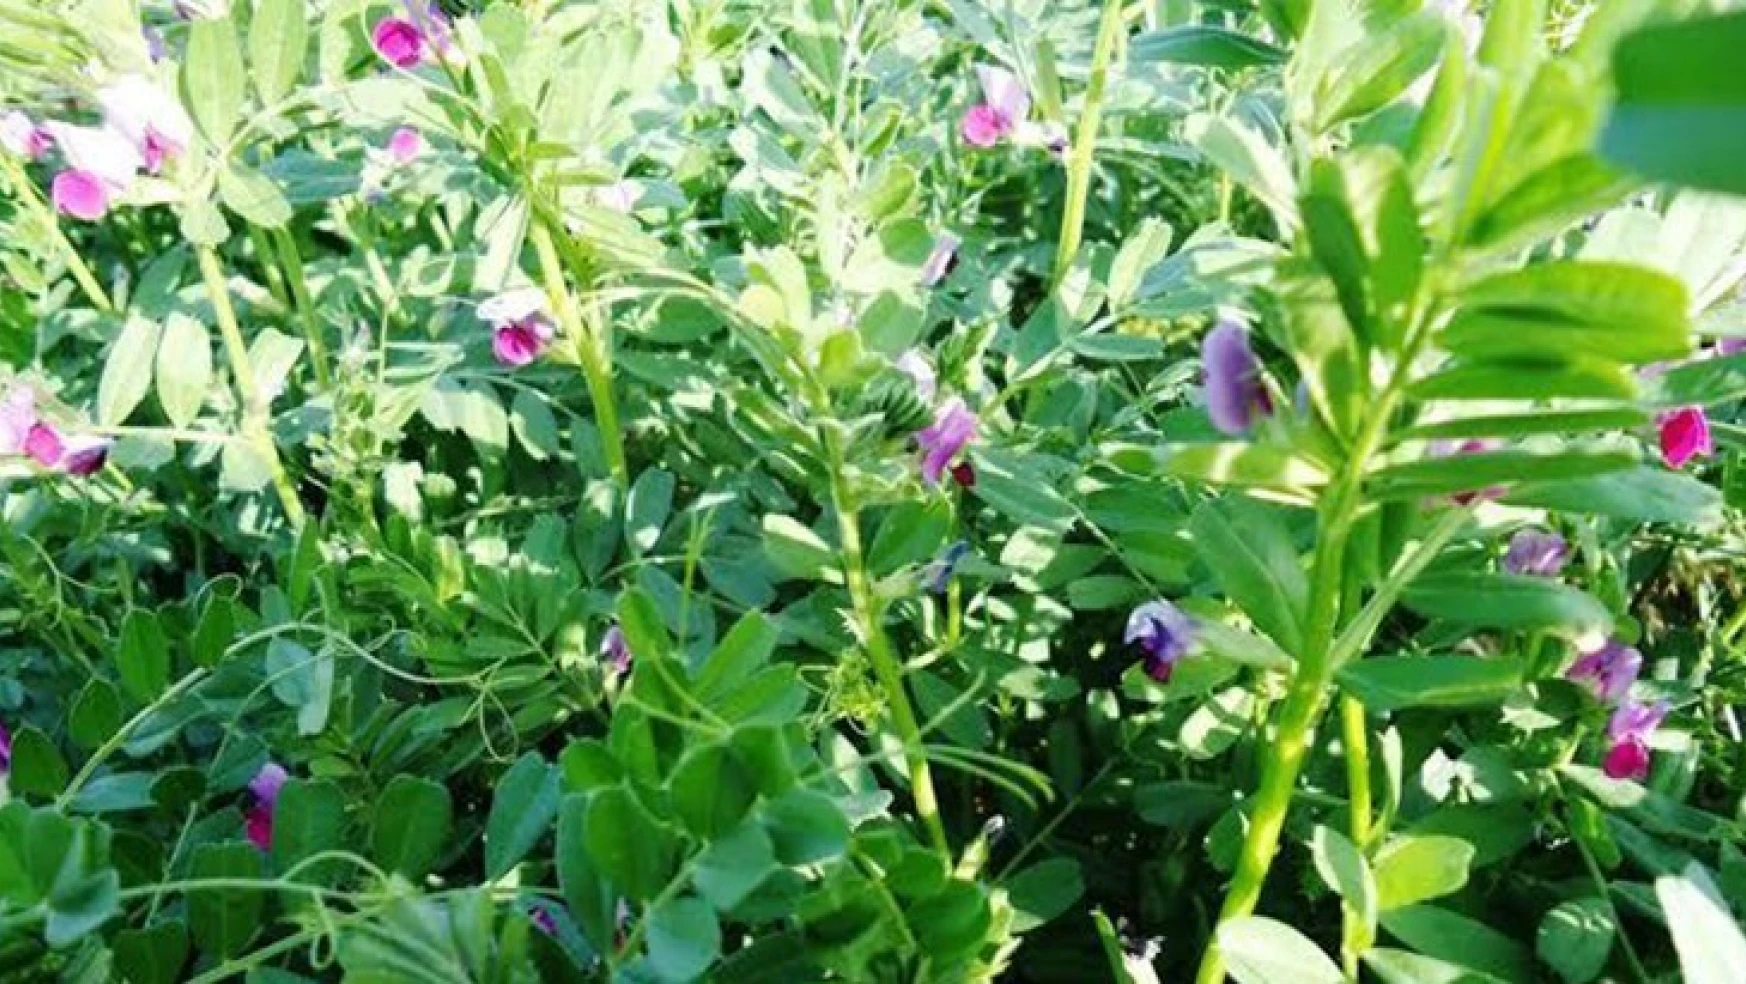 Ara Dönem Yem Bitkileri Yetiştiriciliği projesi Kahramanmaraş'ta uygulanacak